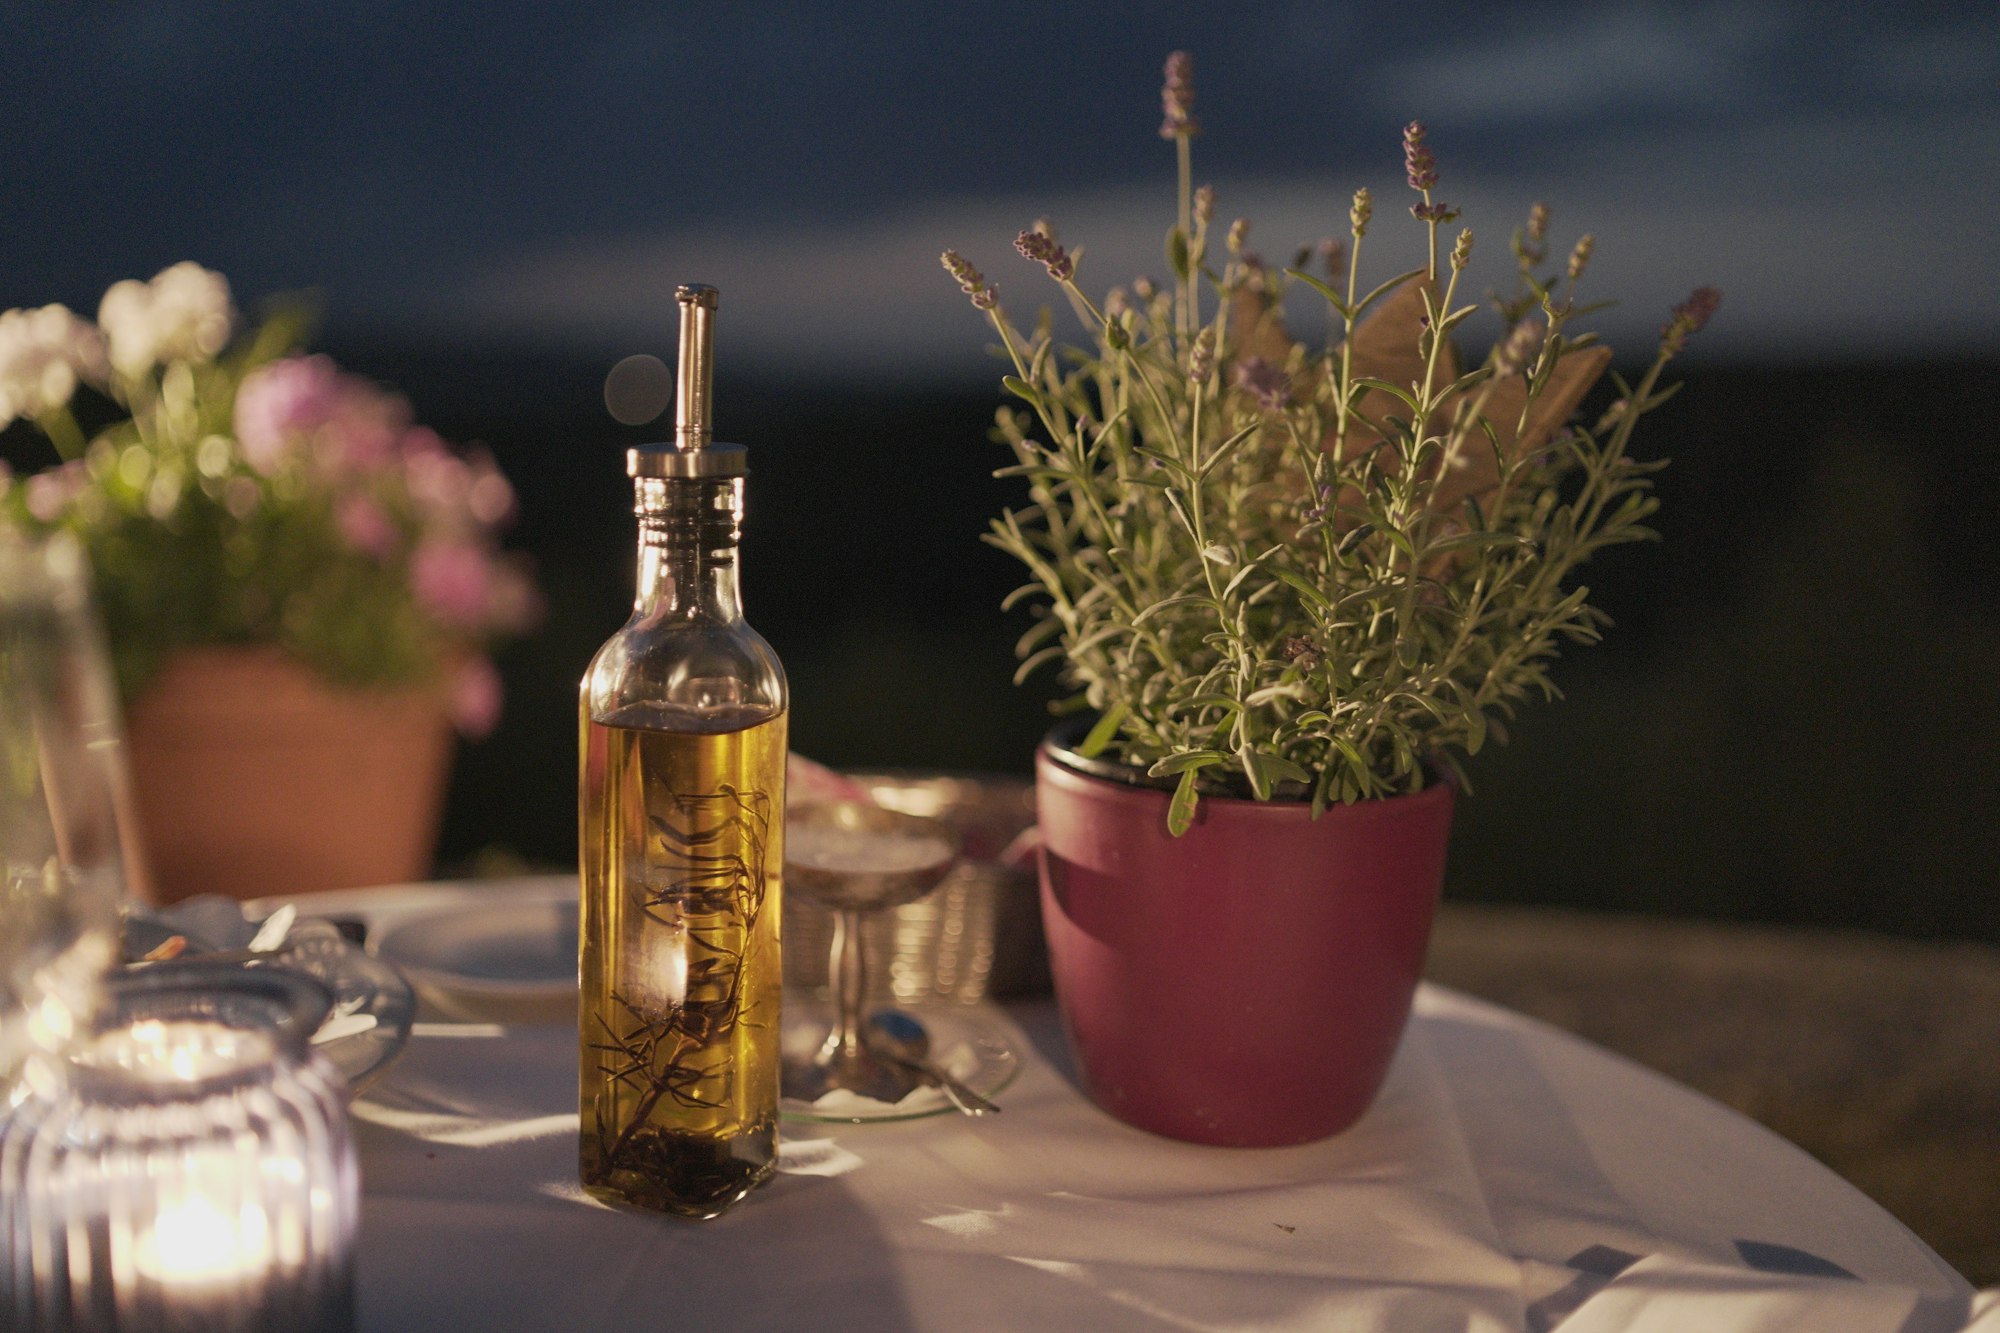 El aceite de oliva siempre es una tendencia saludable